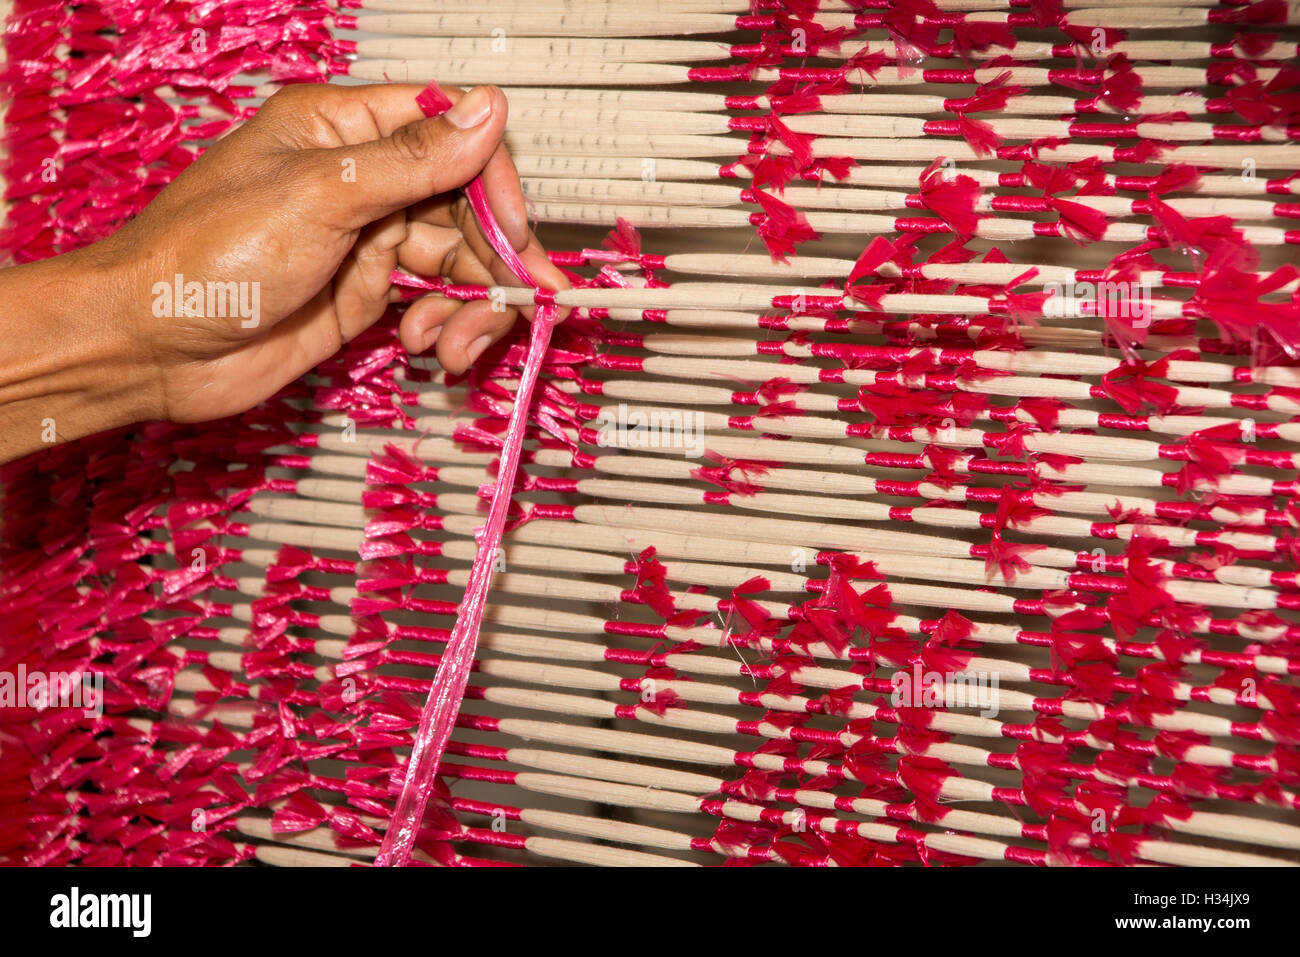 L'INDONÉSIE, Bali, Singaraja, Pertenunan Berdikari atelier de tissage, des mains de travailleur lier dye résister threads Banque D'Images